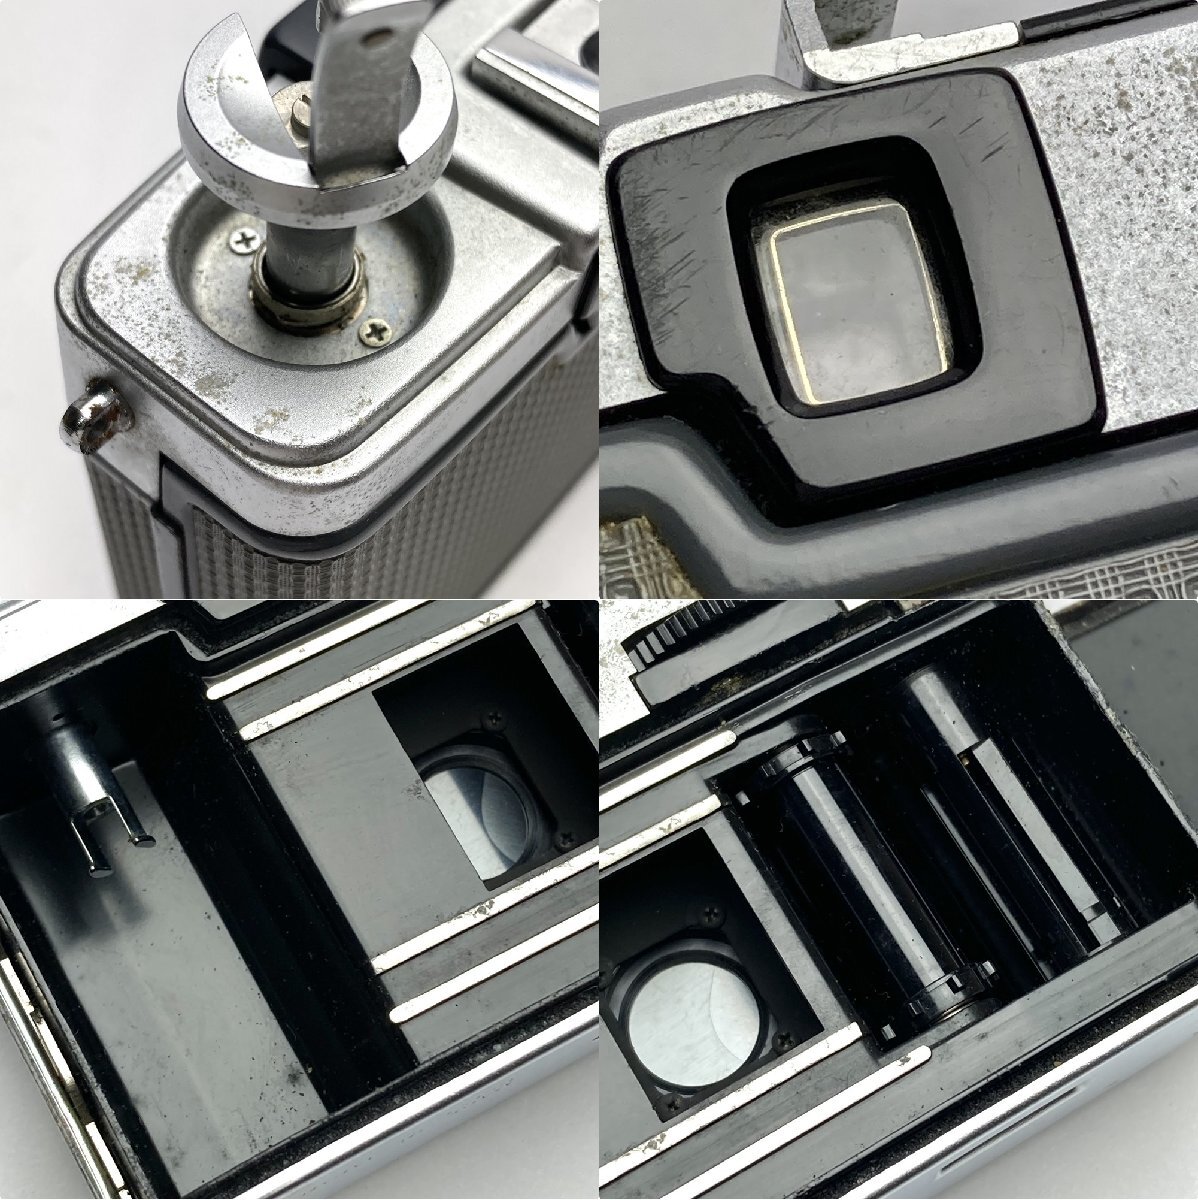 rm) 【ジャンク扱い】 OLYMPUS-PEN オリンパス ペン フィルム カメラ EE-2 1:3.5 f=28mm Lens MADE IN JAPAN 中古 USED 現状渡しの画像6